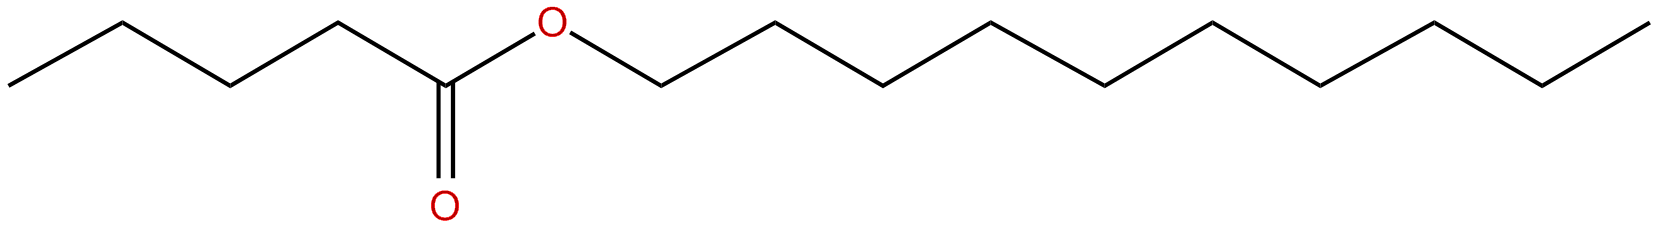 Image of decyl pentanoate